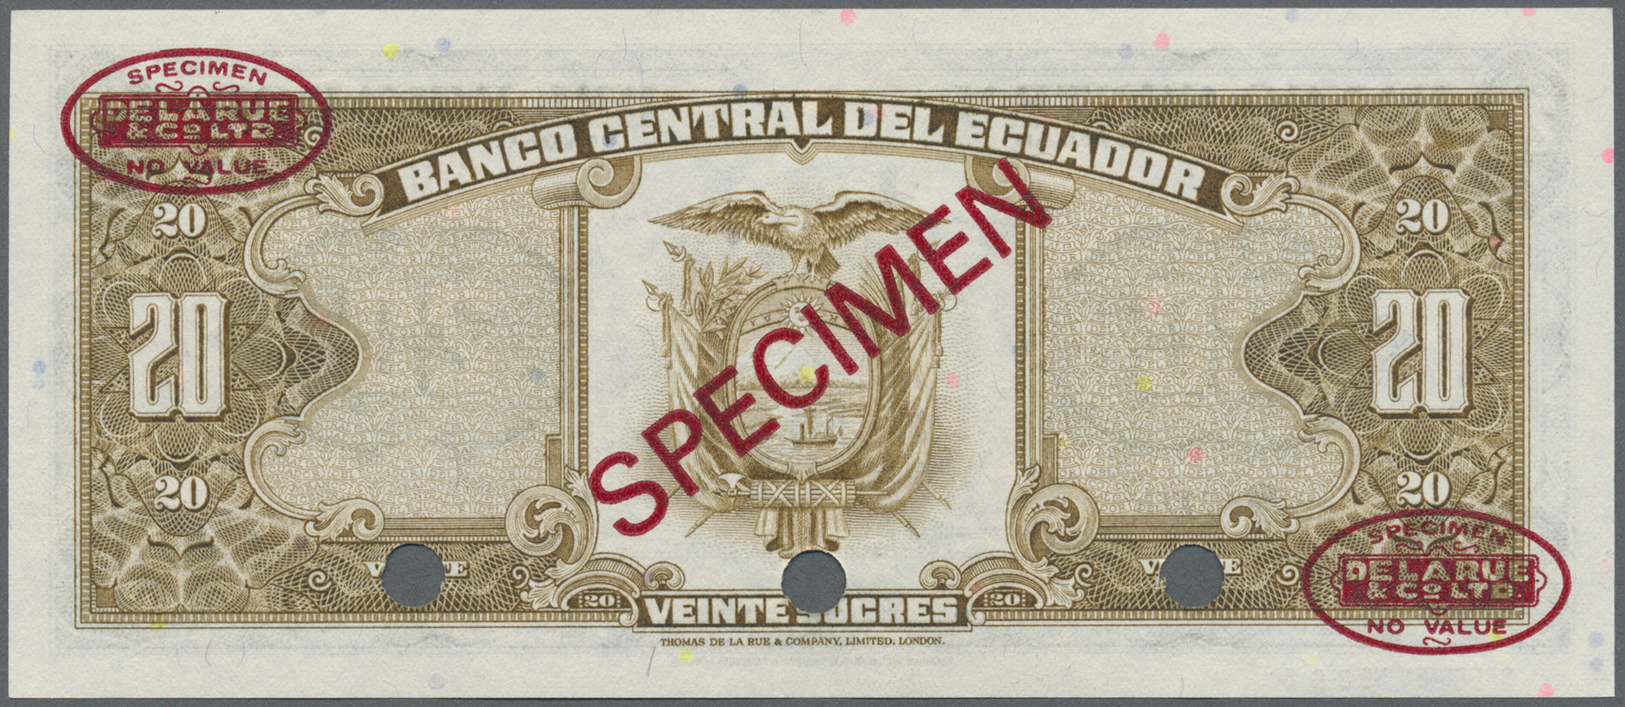 00677 Ecuador: 20 Sucres 1983 Specimen P. 115bs In Condition: AUNC. - Ecuador